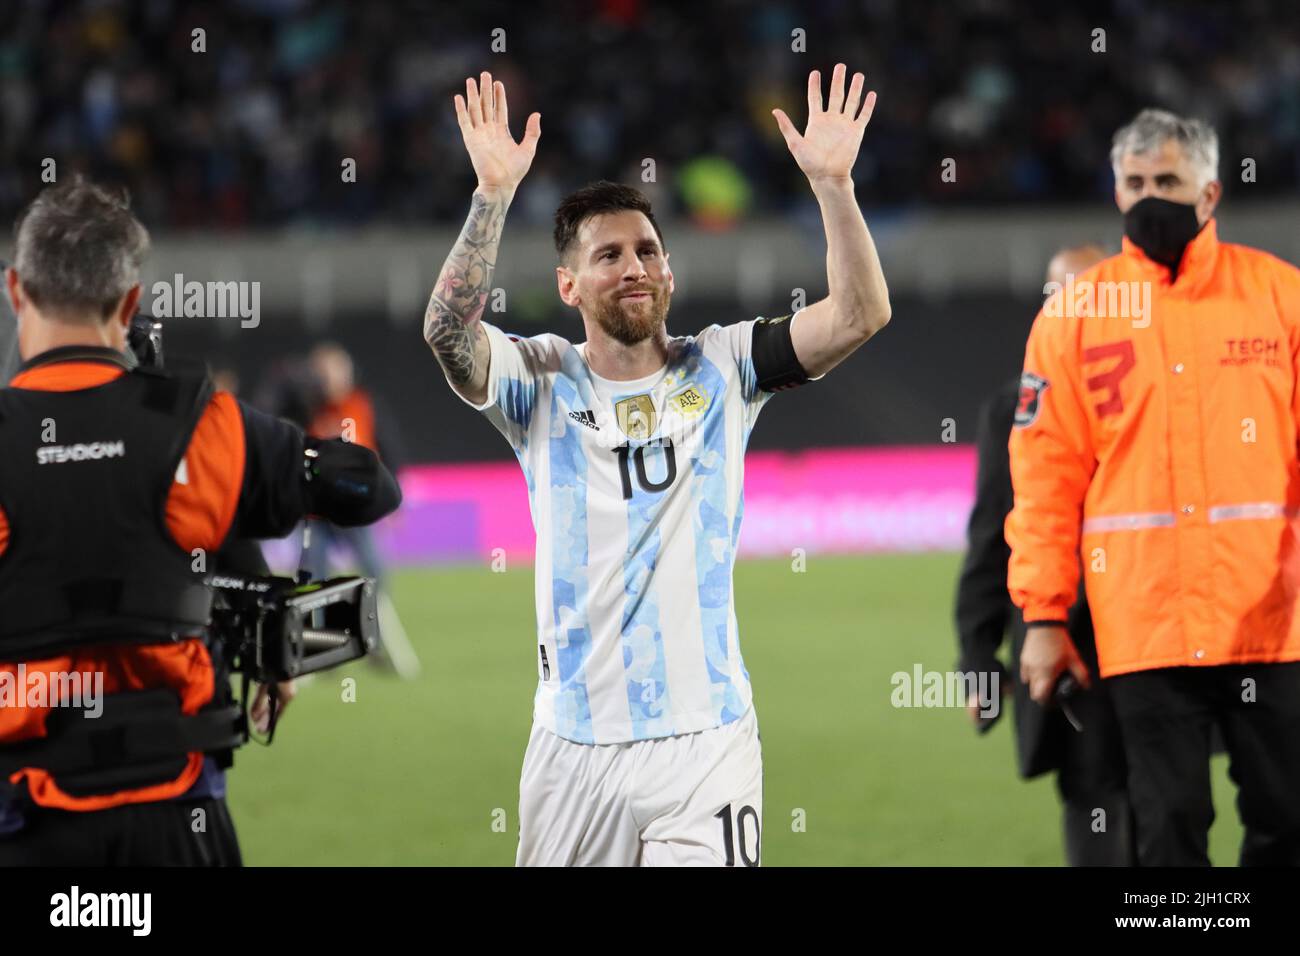 Buenos Aires; 10 de octubre de 2021: Argentina vs Uruguay, Messi greets the public. Stock Photo